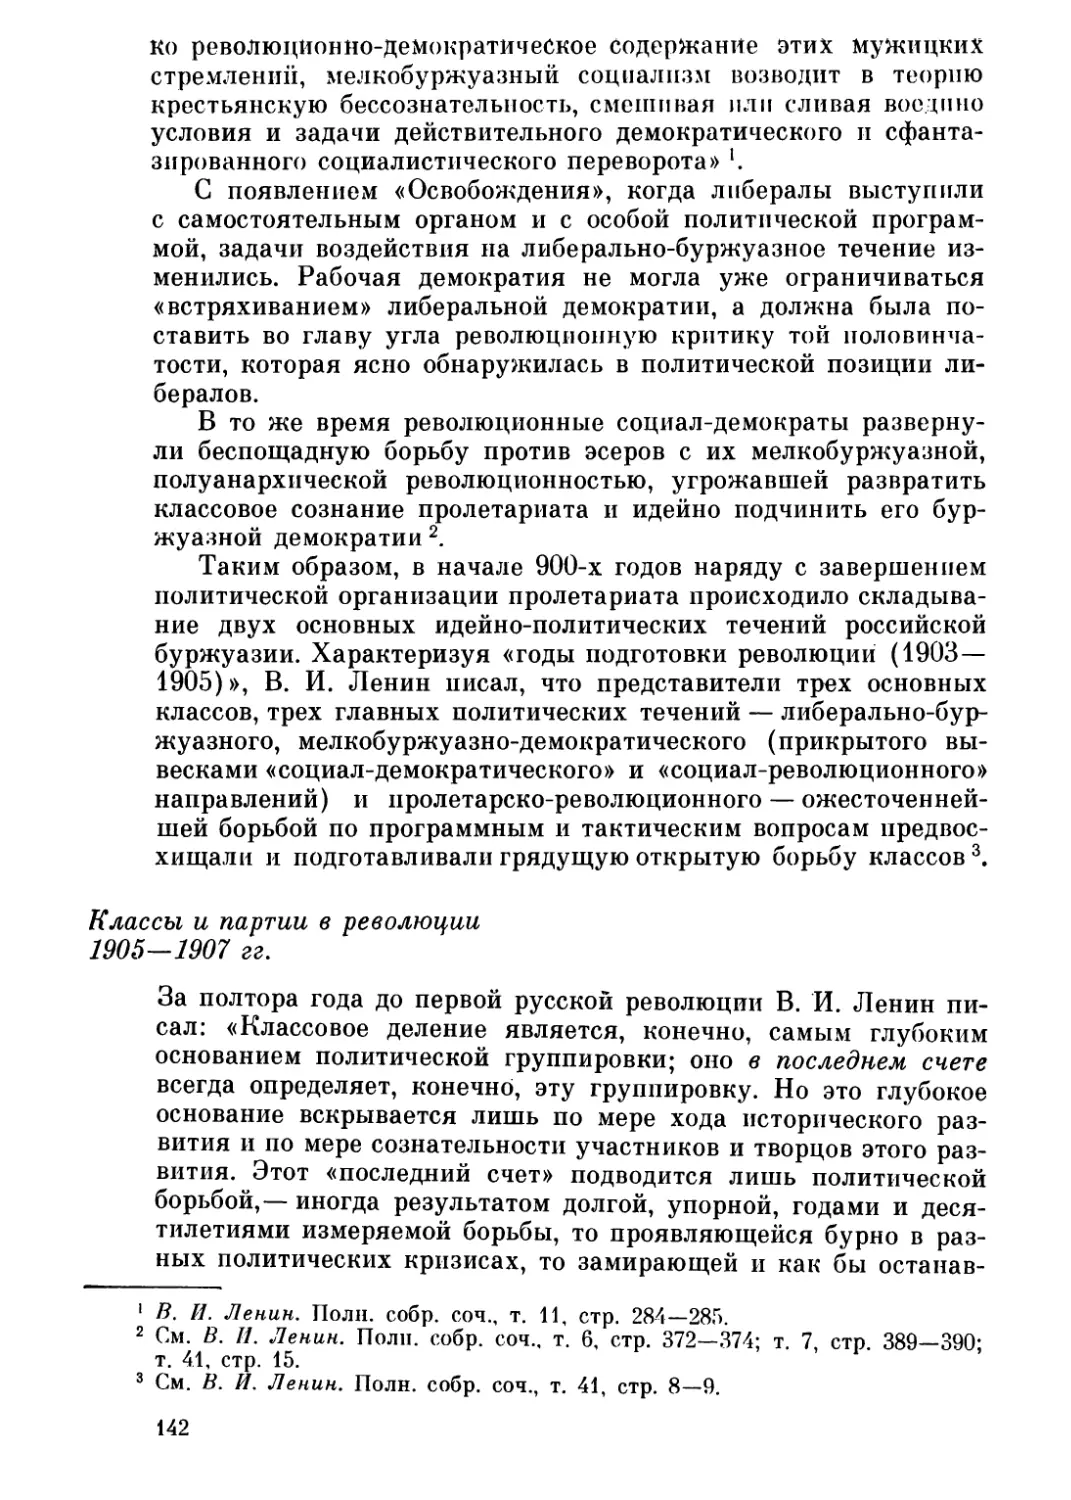 Классы и партии в революции 1905—1907 гг.